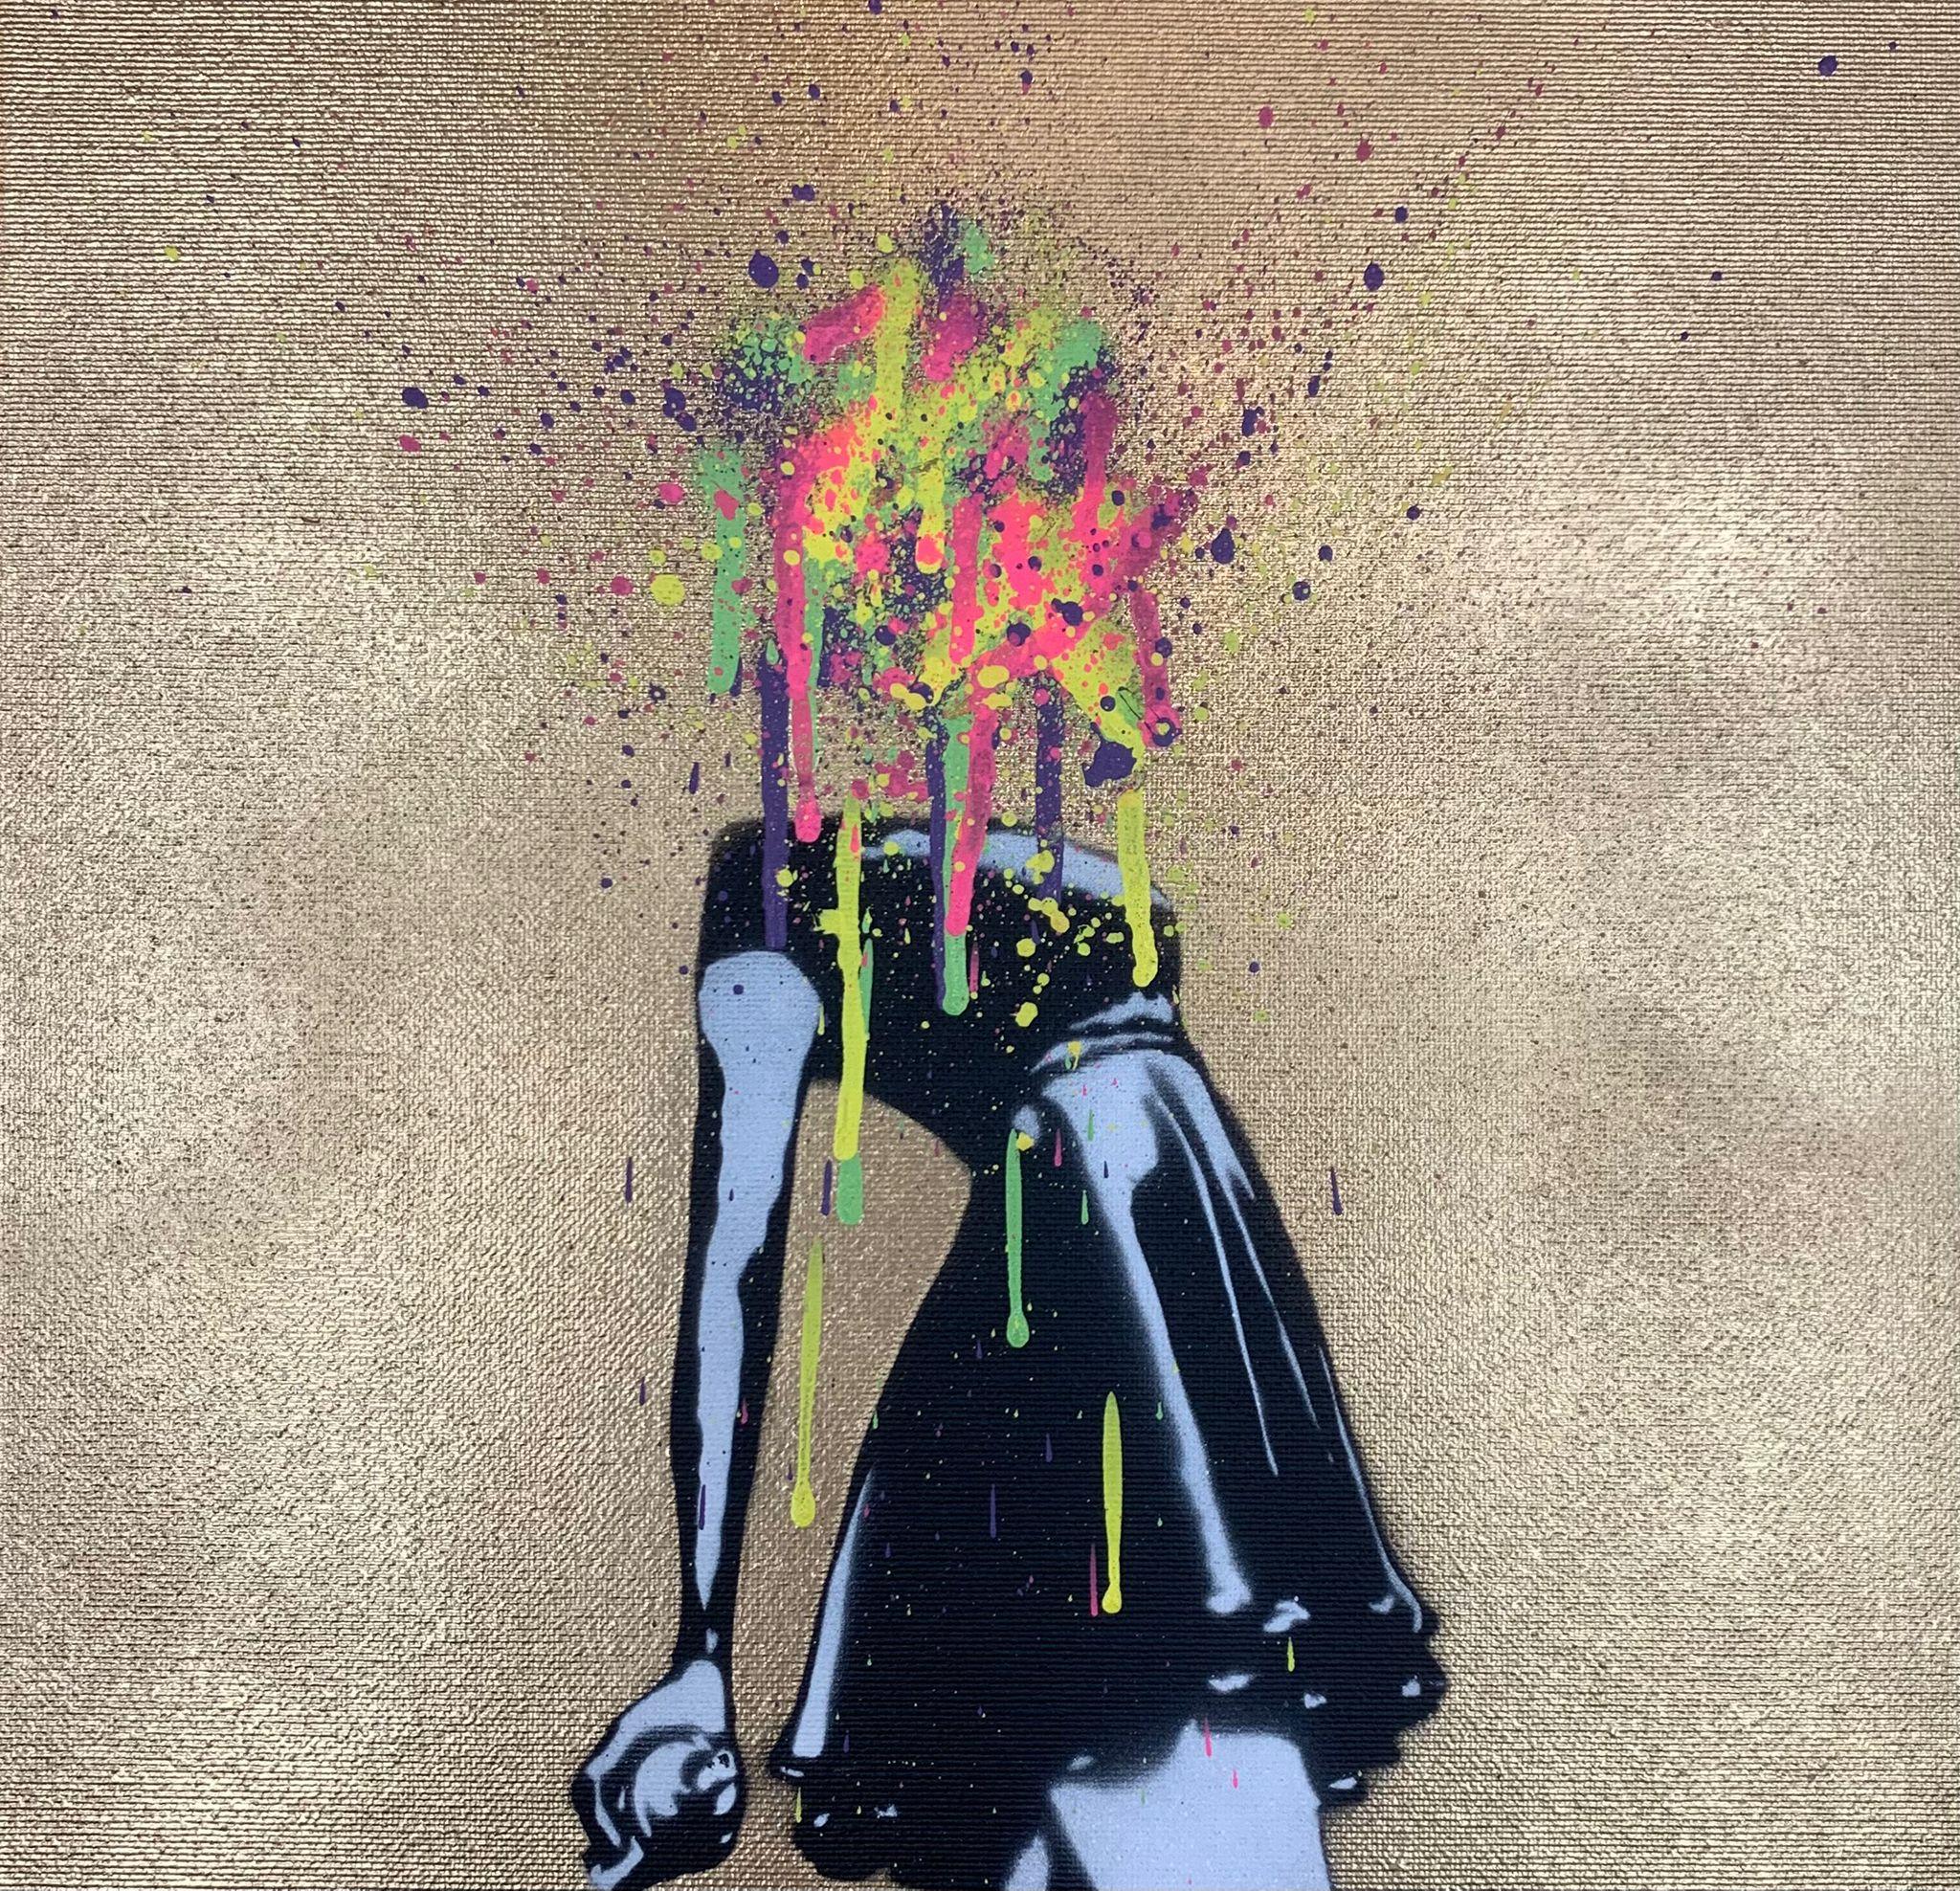 To Erase Canvas by PONK (Street Art), 2022 2